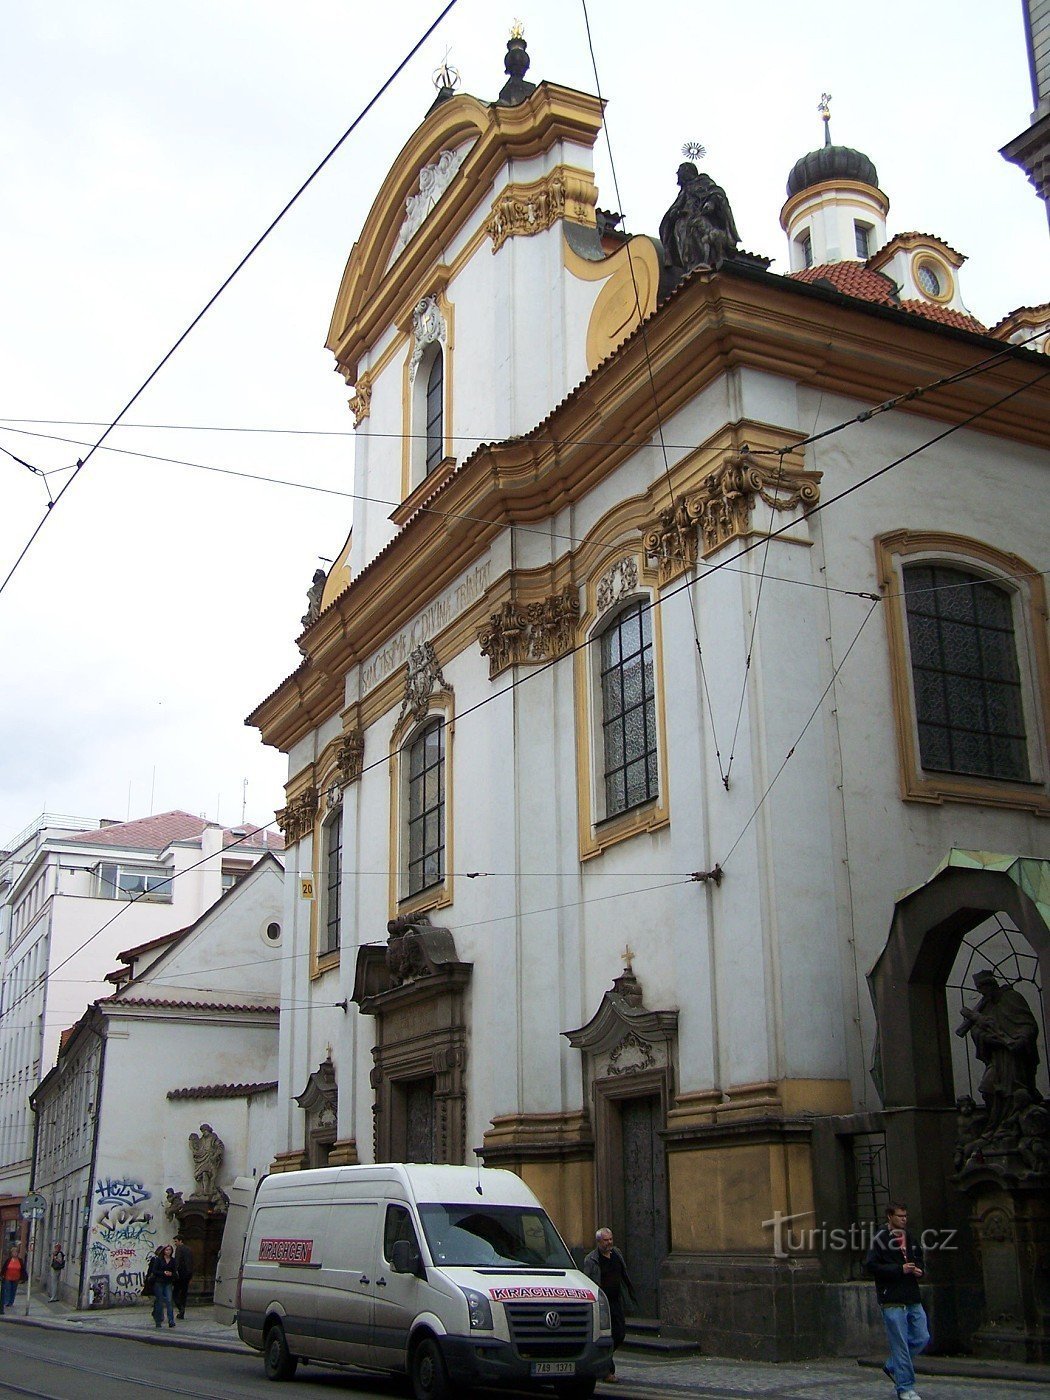 Praga - Biserica Sfintei Treimi